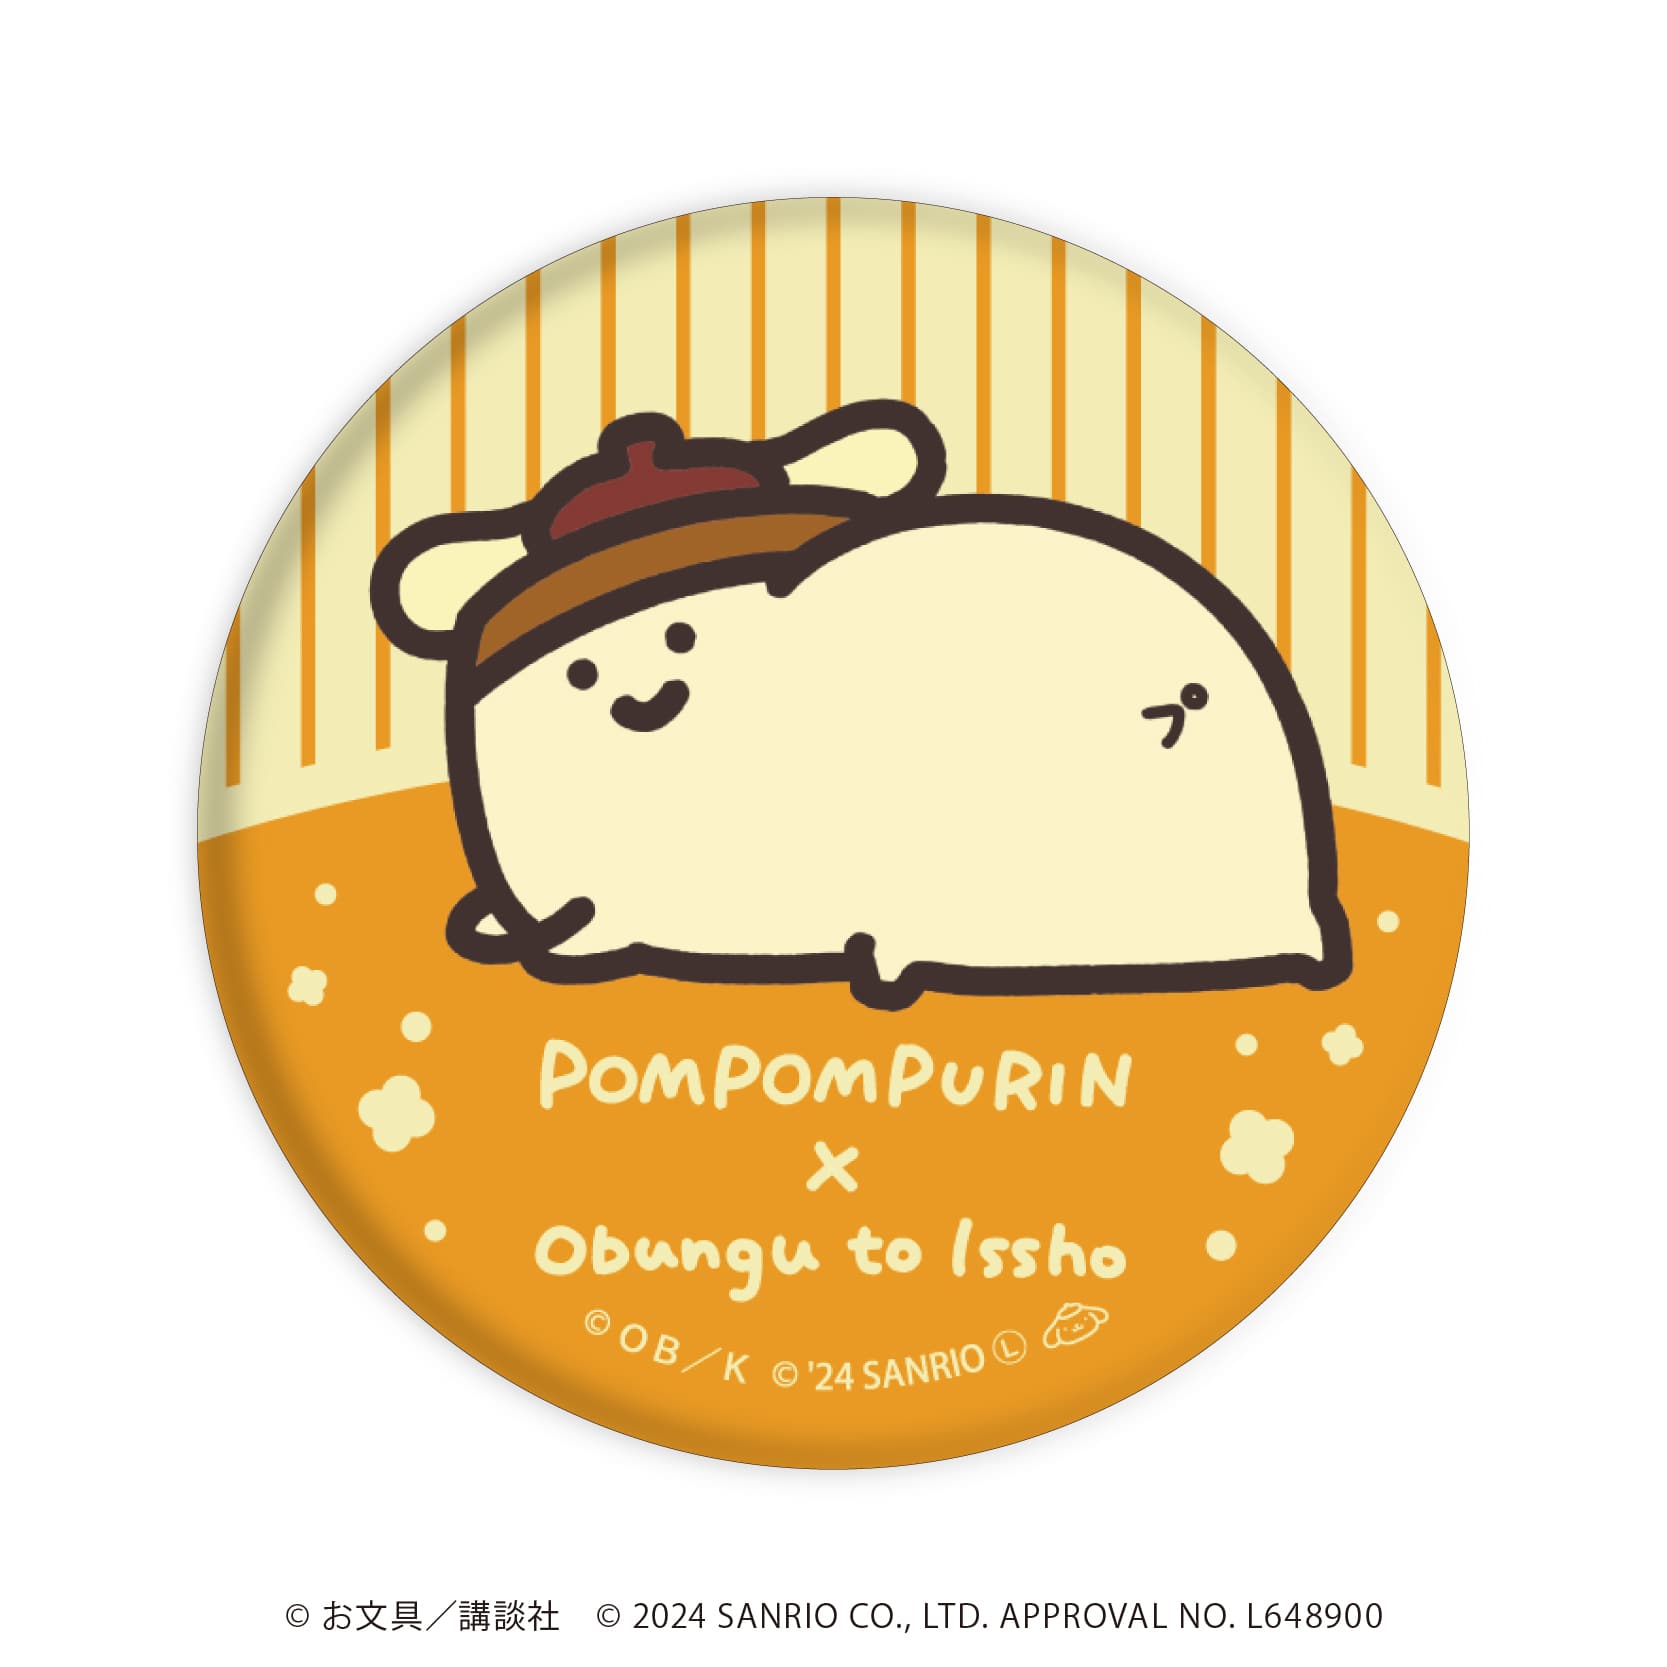 缶バッジ「お文具といっしょ×ポムポムプリン」01/ブラインド(7種)(コラボイラスト)